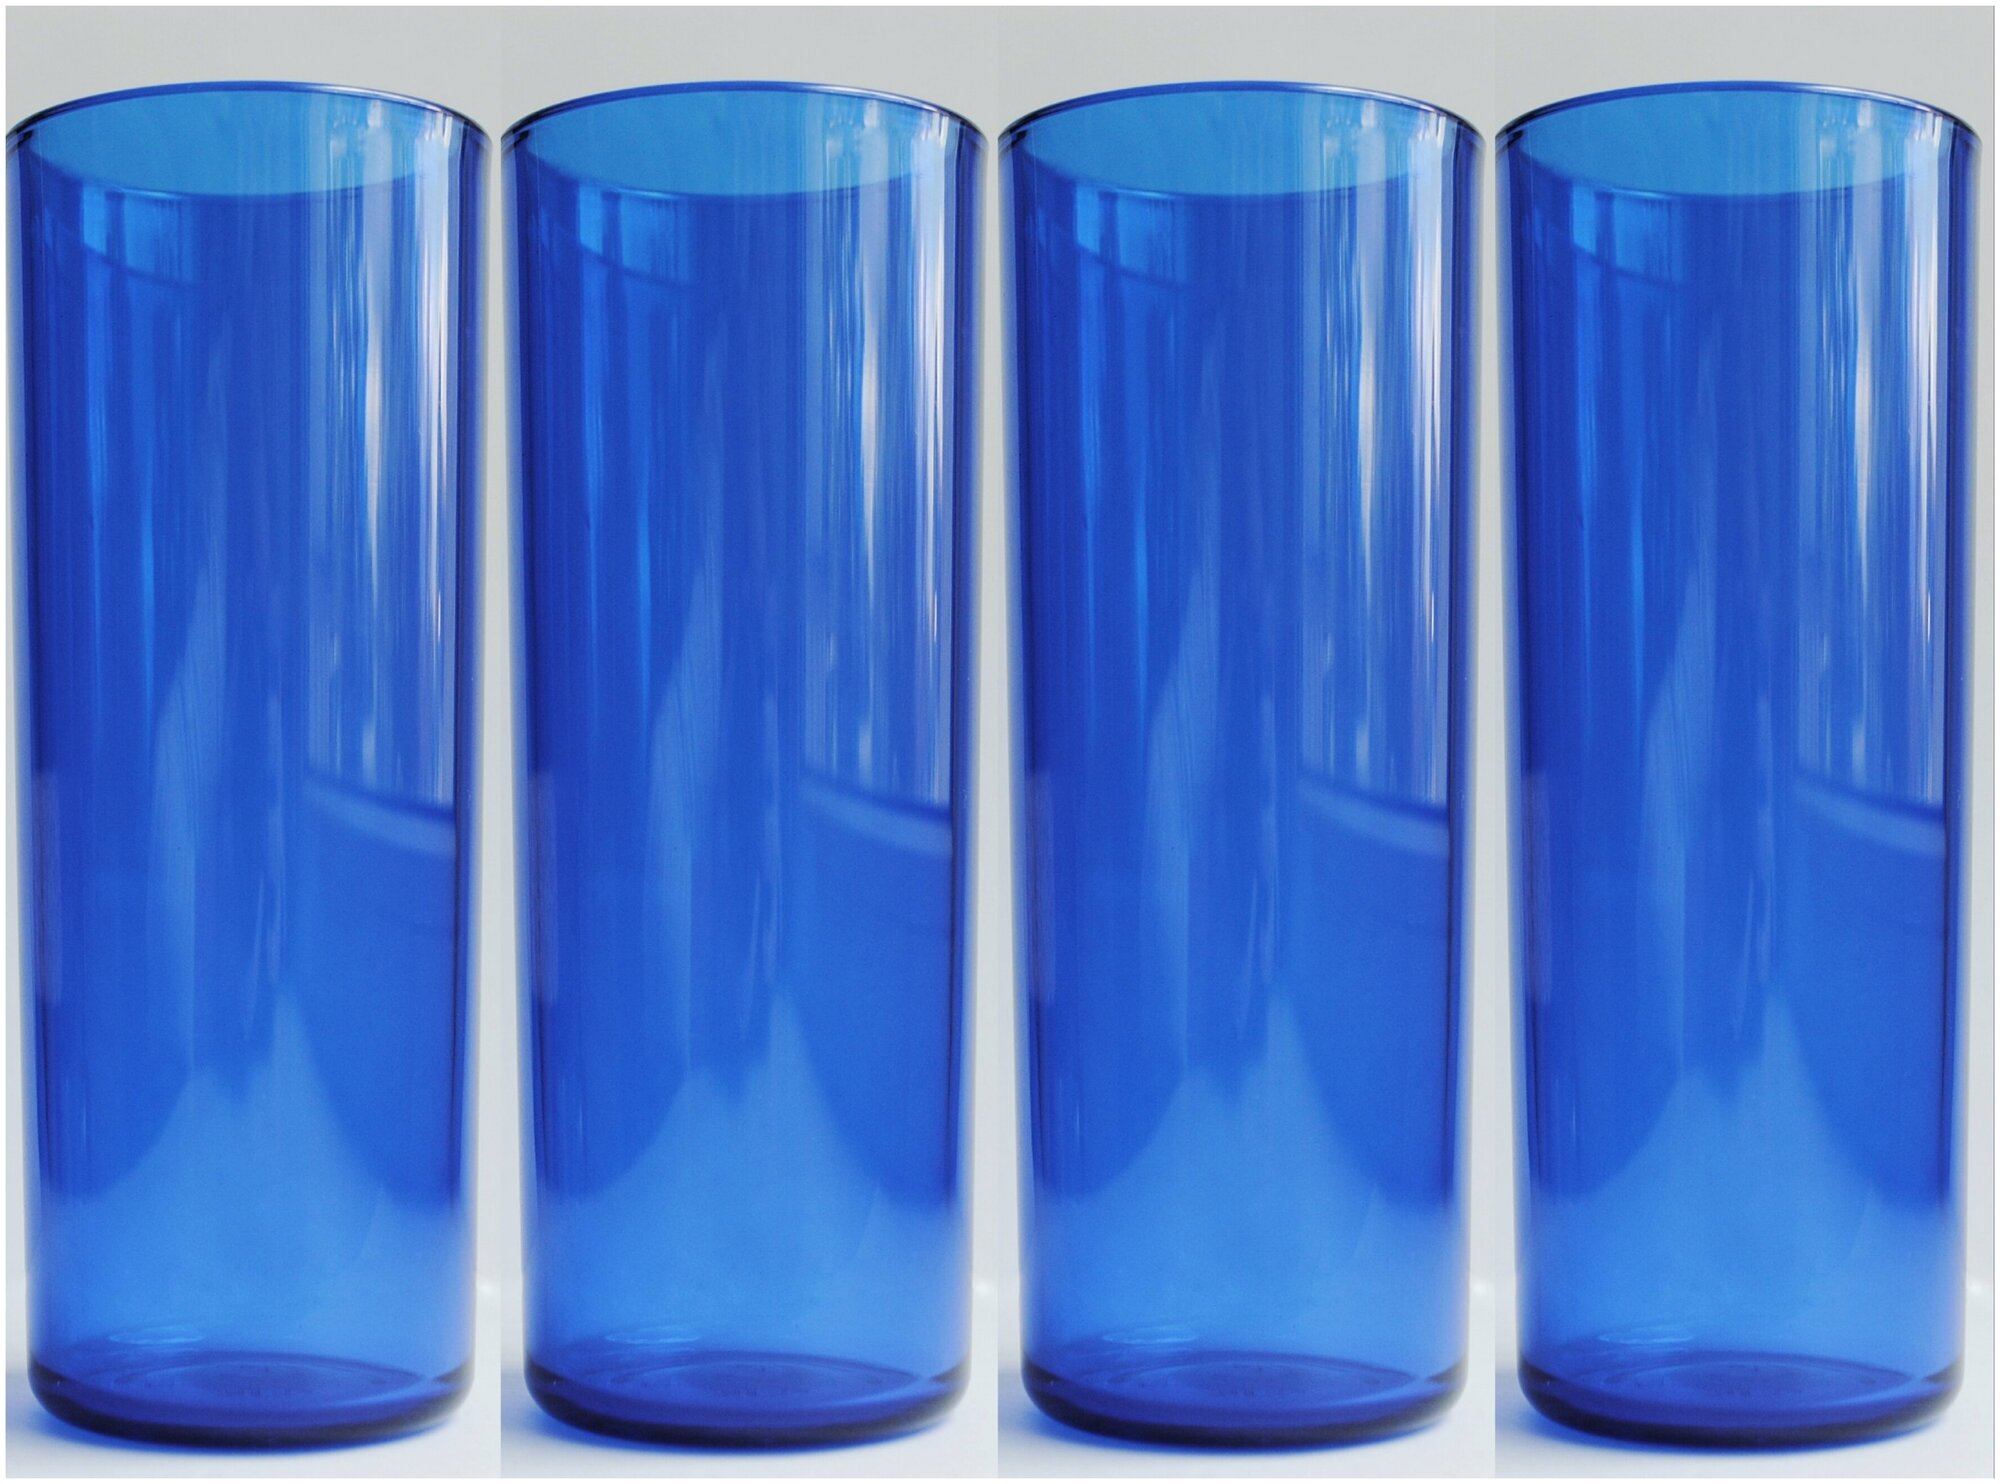 Стакан 250 мл. для многоразового использования из Поликарбоната (плотного пластика) (синий 4 штуки)